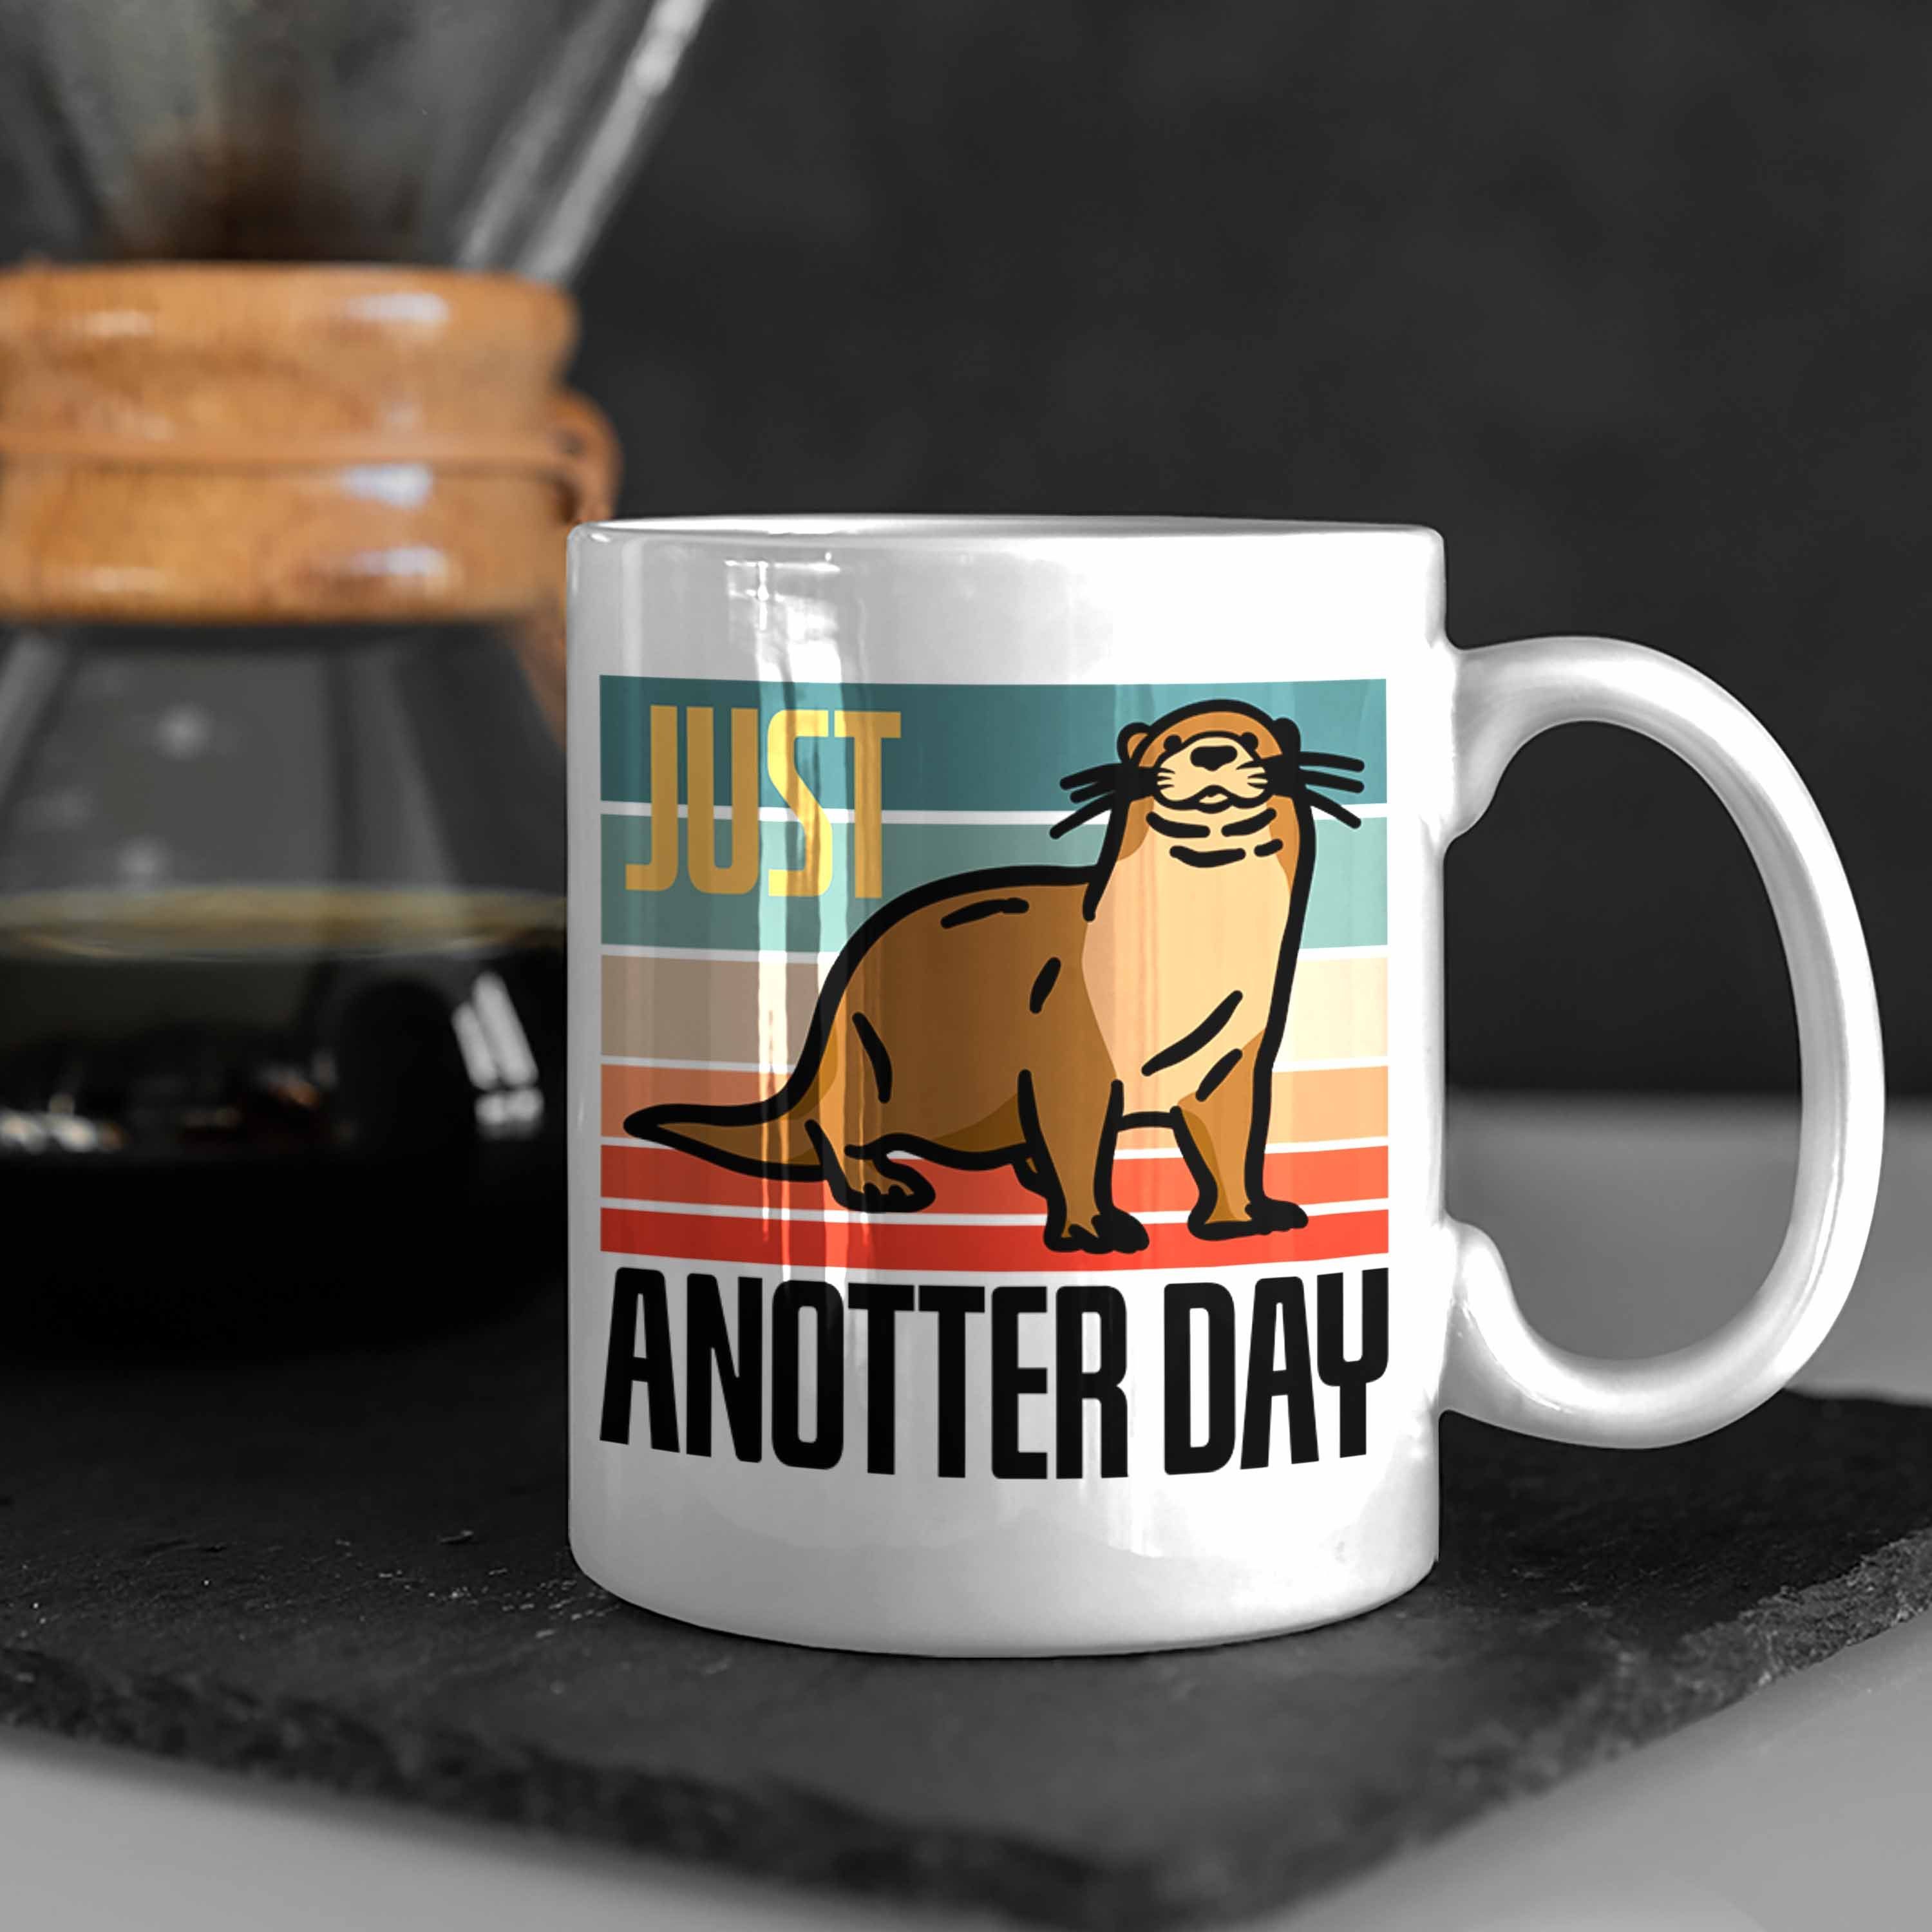 Trendation Tasse Lustige Otter Tasse Day" Weiss für Anotter "Just Tierliebhaber Geschenk